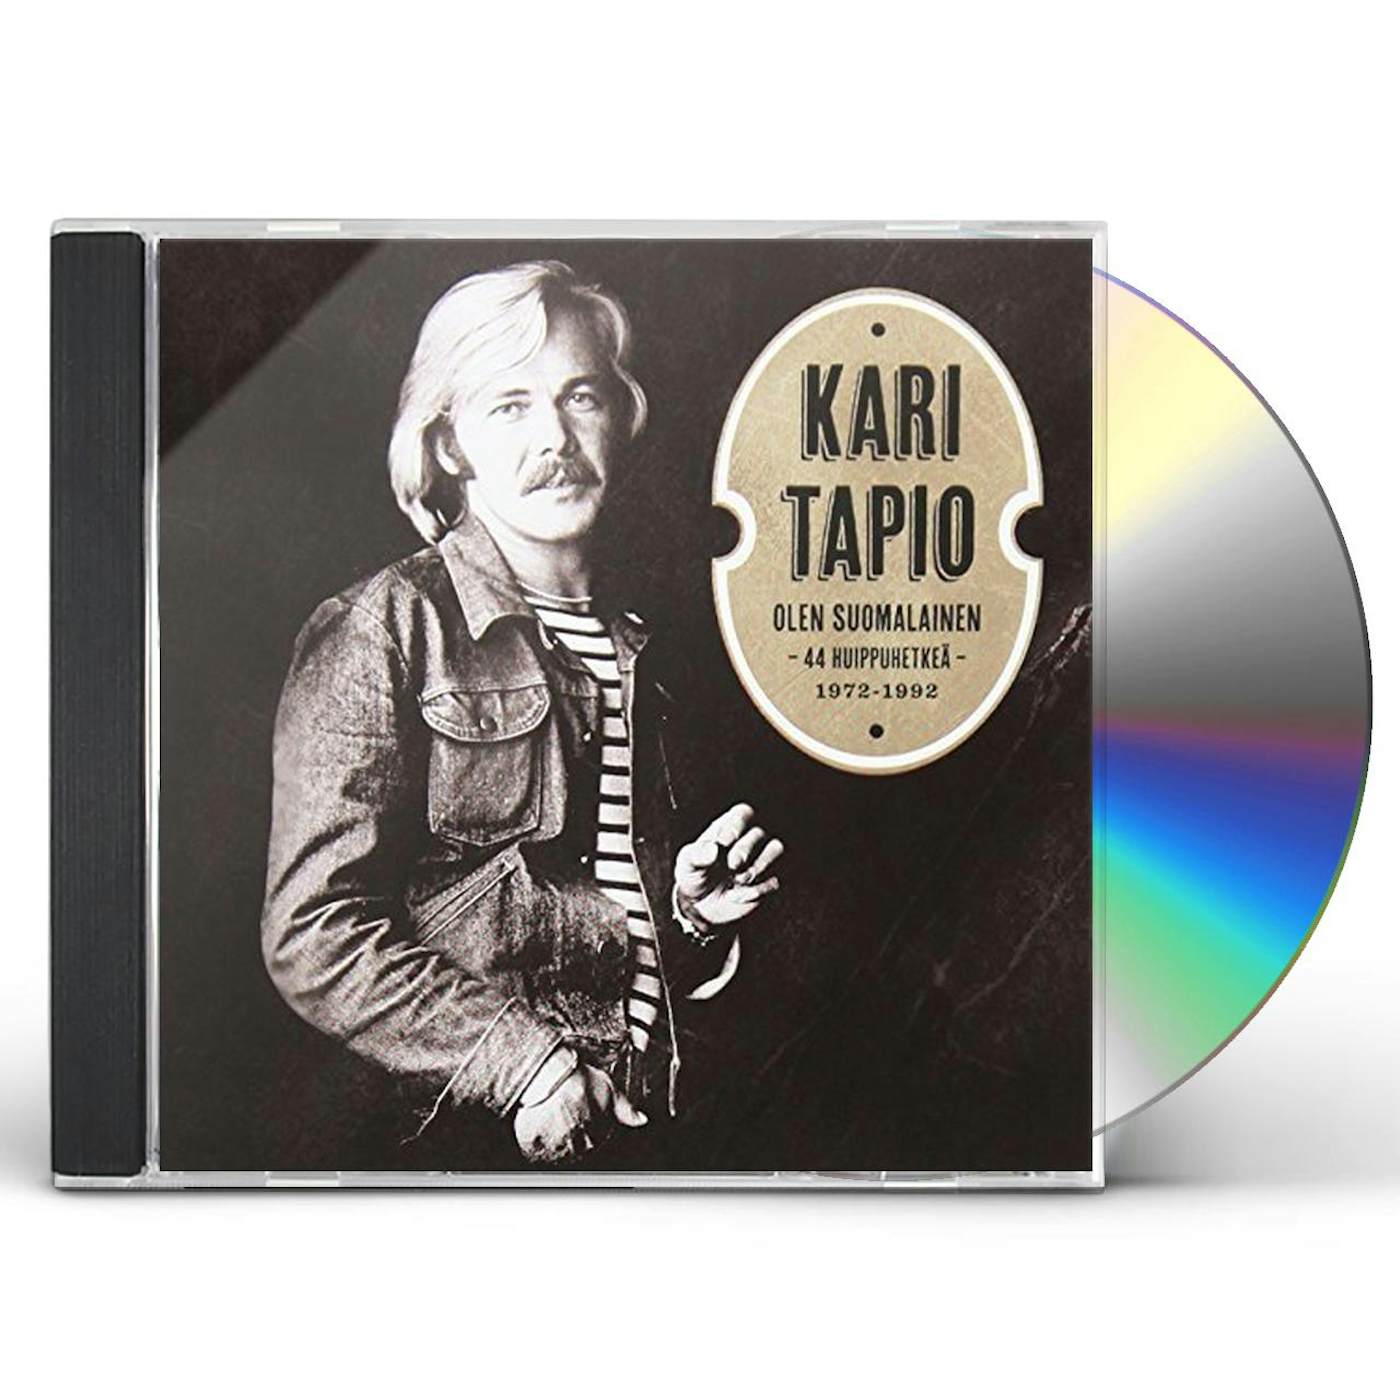 Kari Tapio OLEN SUOMALAINEN: 44 HUIPPUHETKEA 1972-92 CD